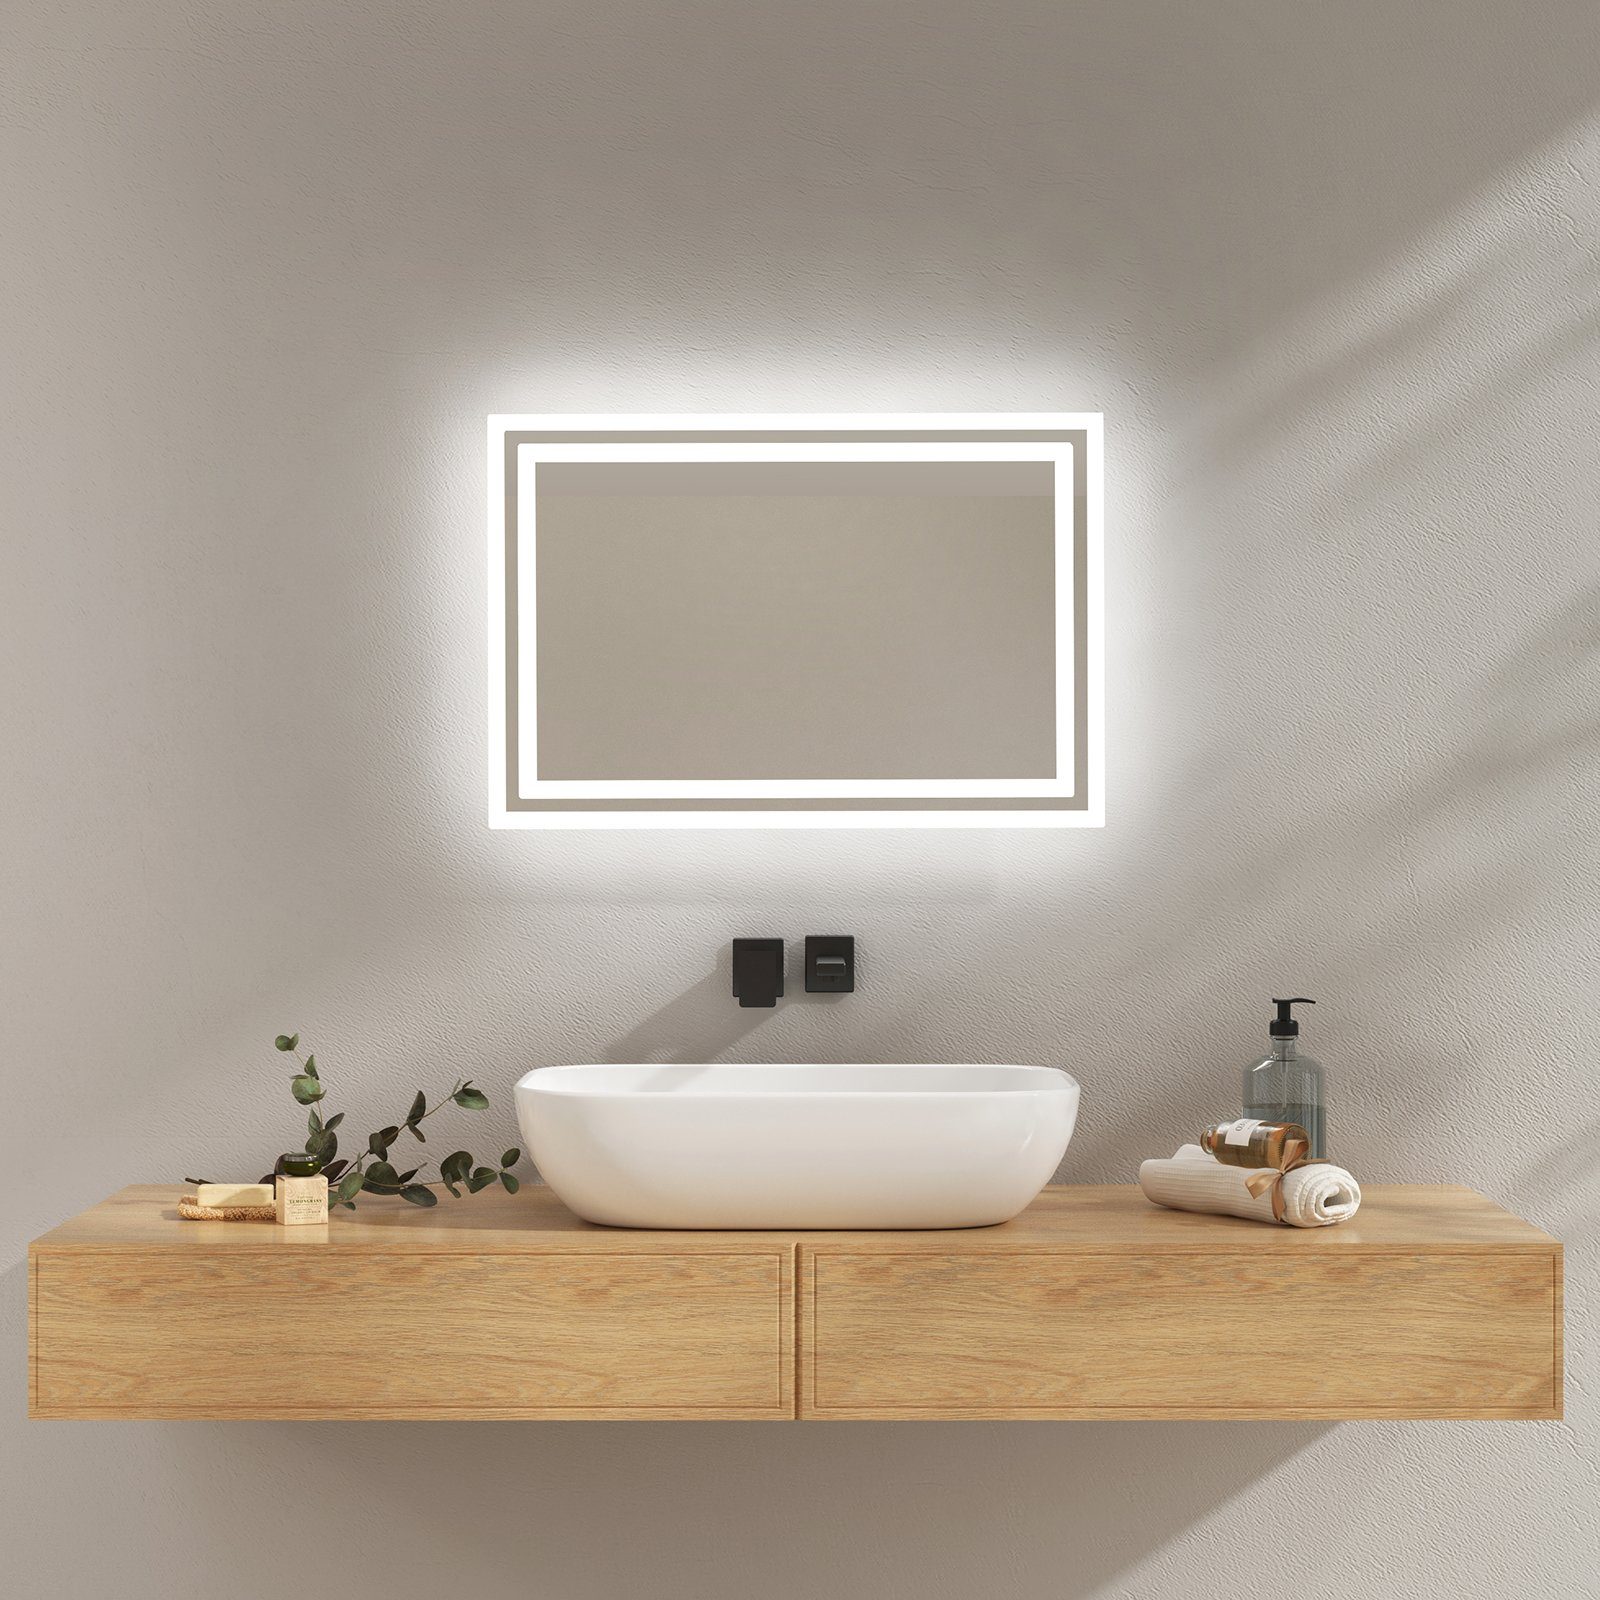 EMKE Зеркало для ванной комнаты Зеркало для ванной комнаты mit Beleuchtung LED Badezimmerspiegel Wandspiegel, Beschlagfrei, 2 Farben des Lichts, Druckknopfschalter